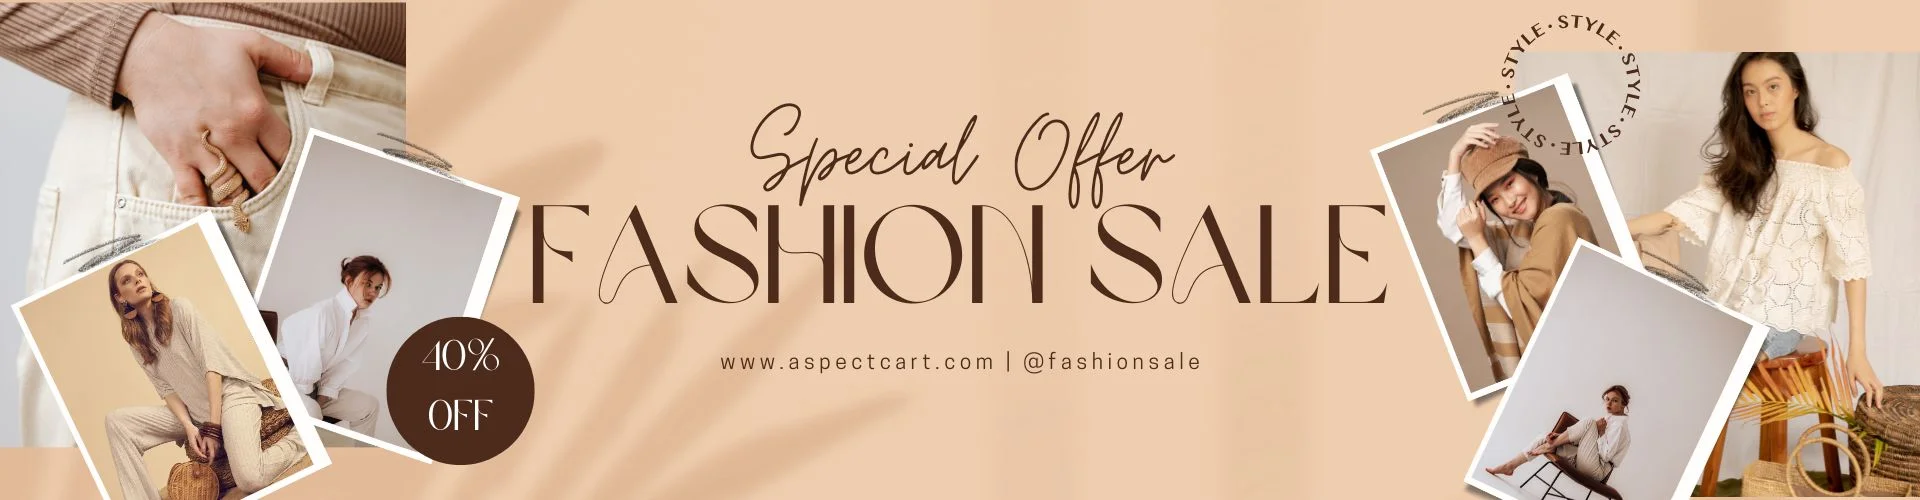 Bannière pour une offre spéciale dans une boutique de mode en ligne